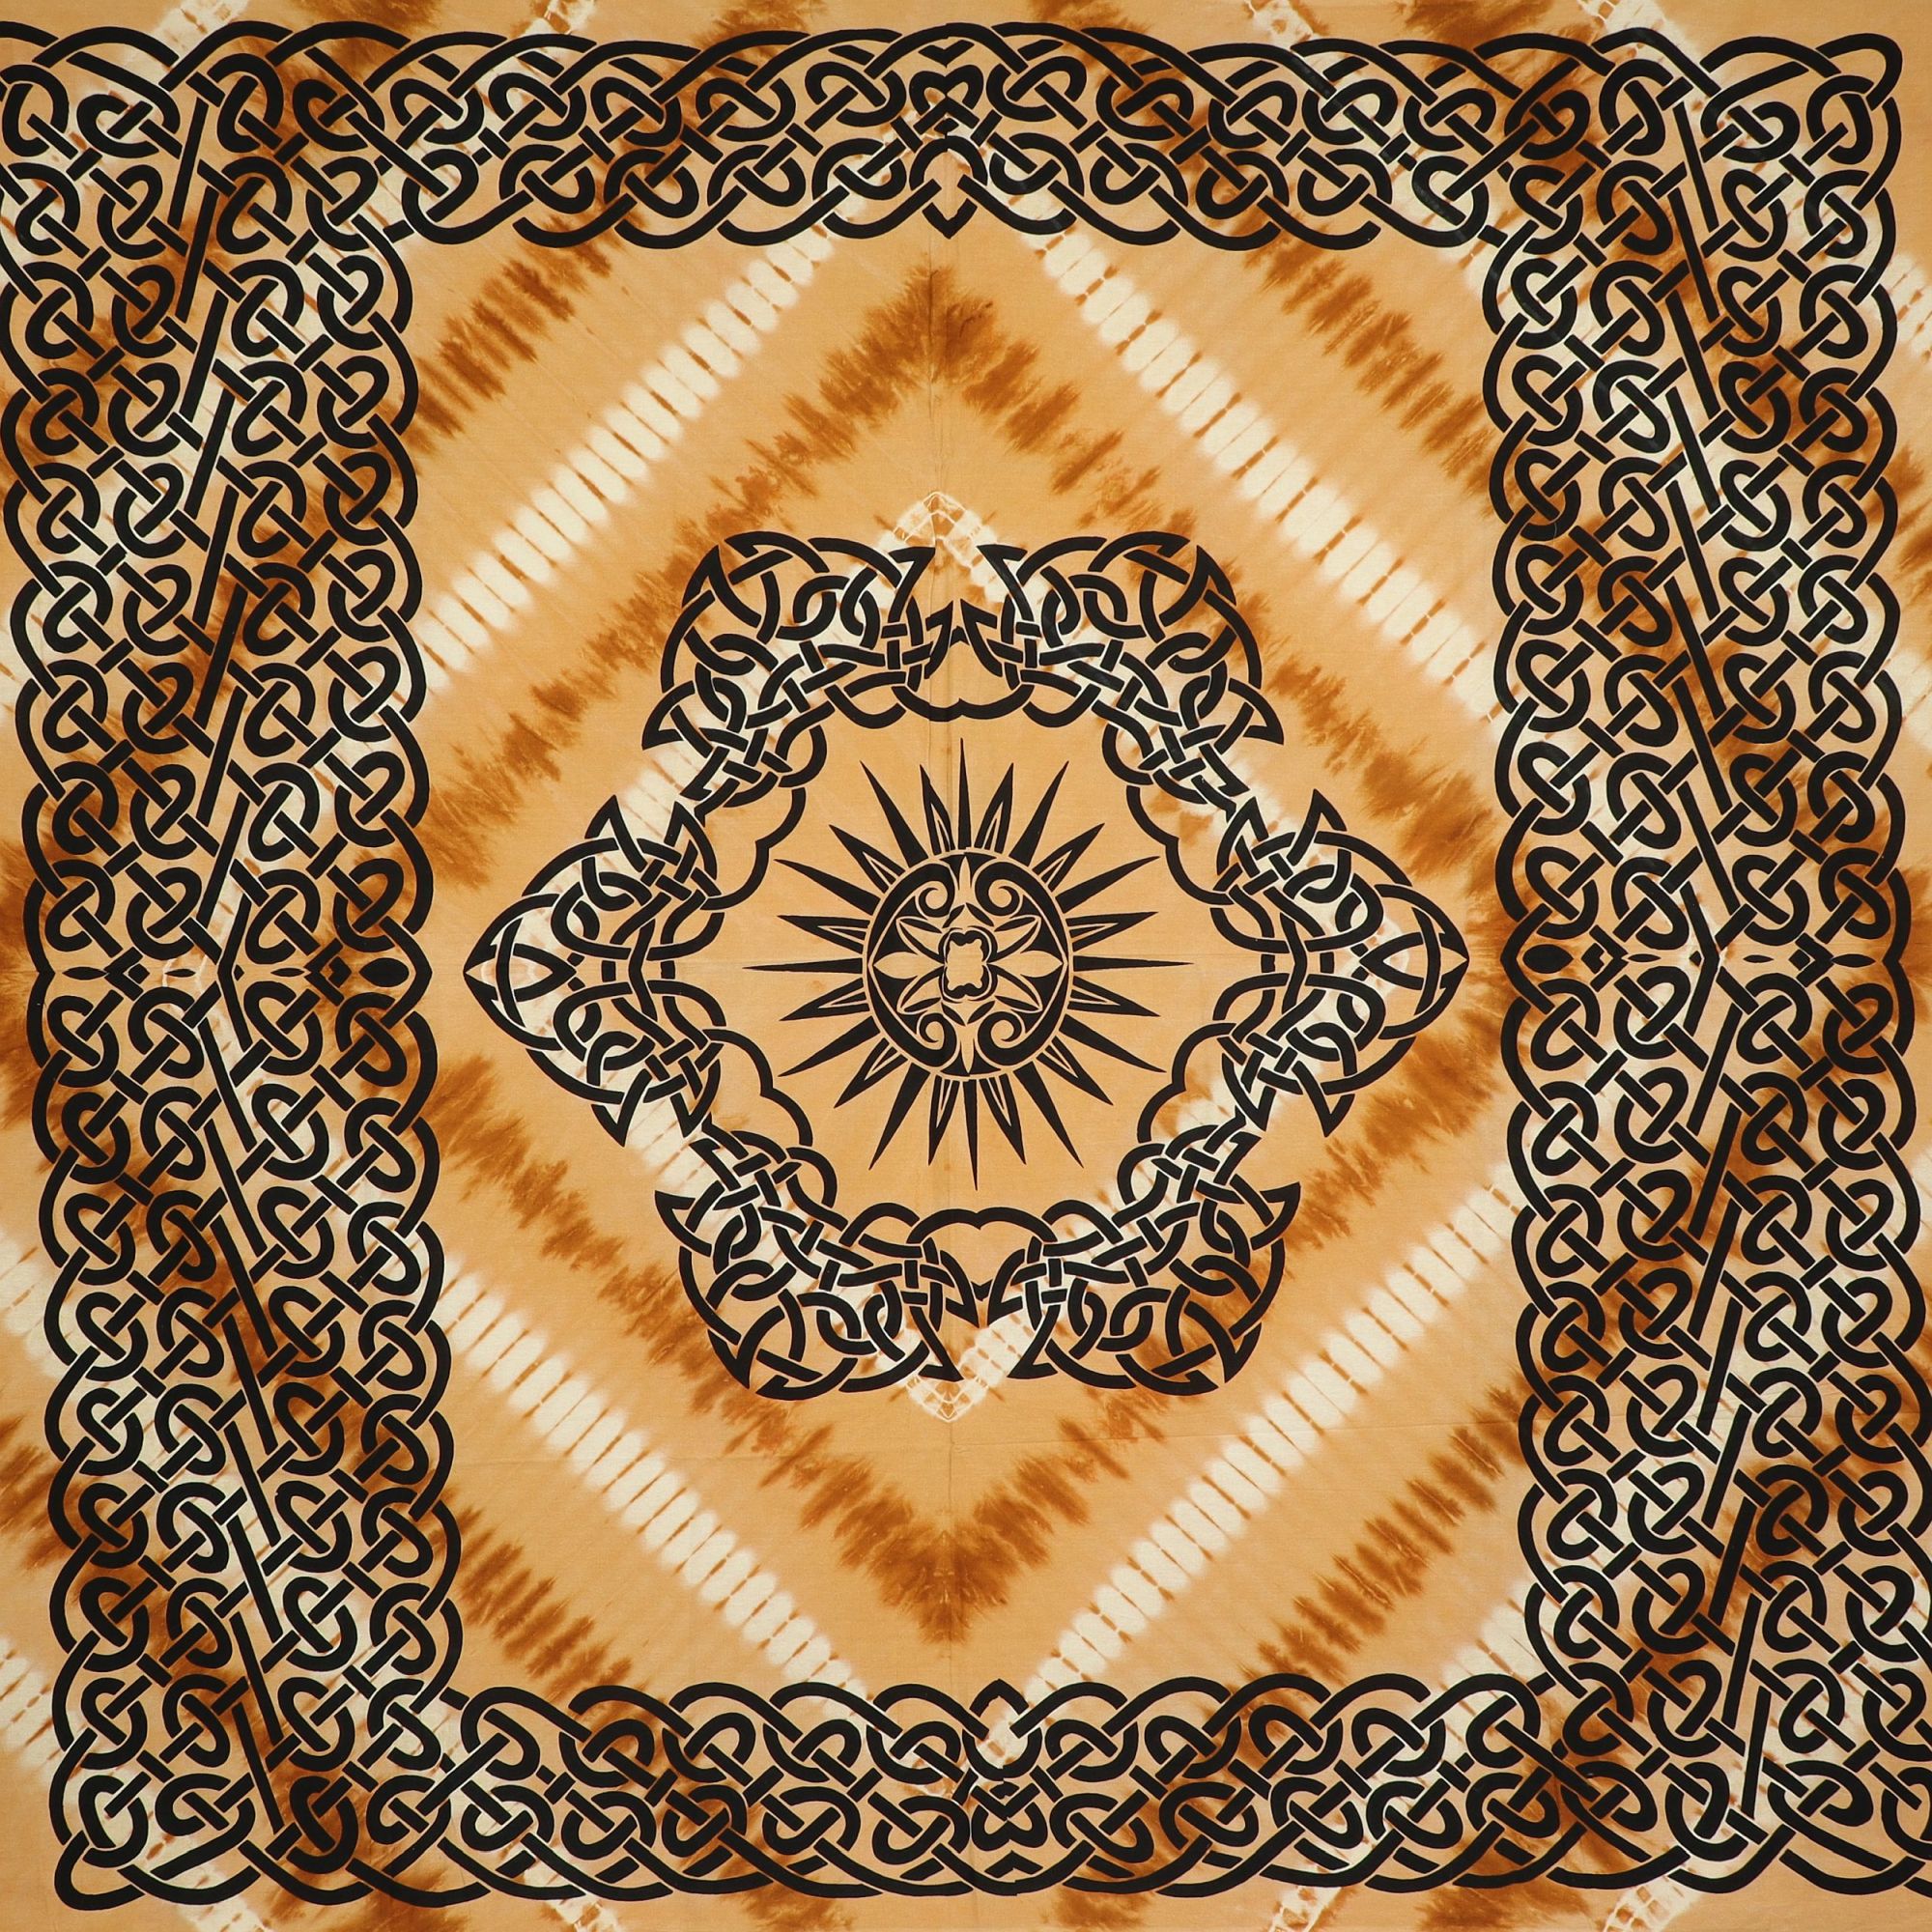 Wandtuch XXL 210x230 - keltischer Mandala Lotus - 100% Baumwolle - detailreicher indischer Druck - mehrfarbig Batik - dekoratives Tuch, Wandbild, Tagesdecke, Bedcover, Vorhang, Picknick-Decke, Strandtuch